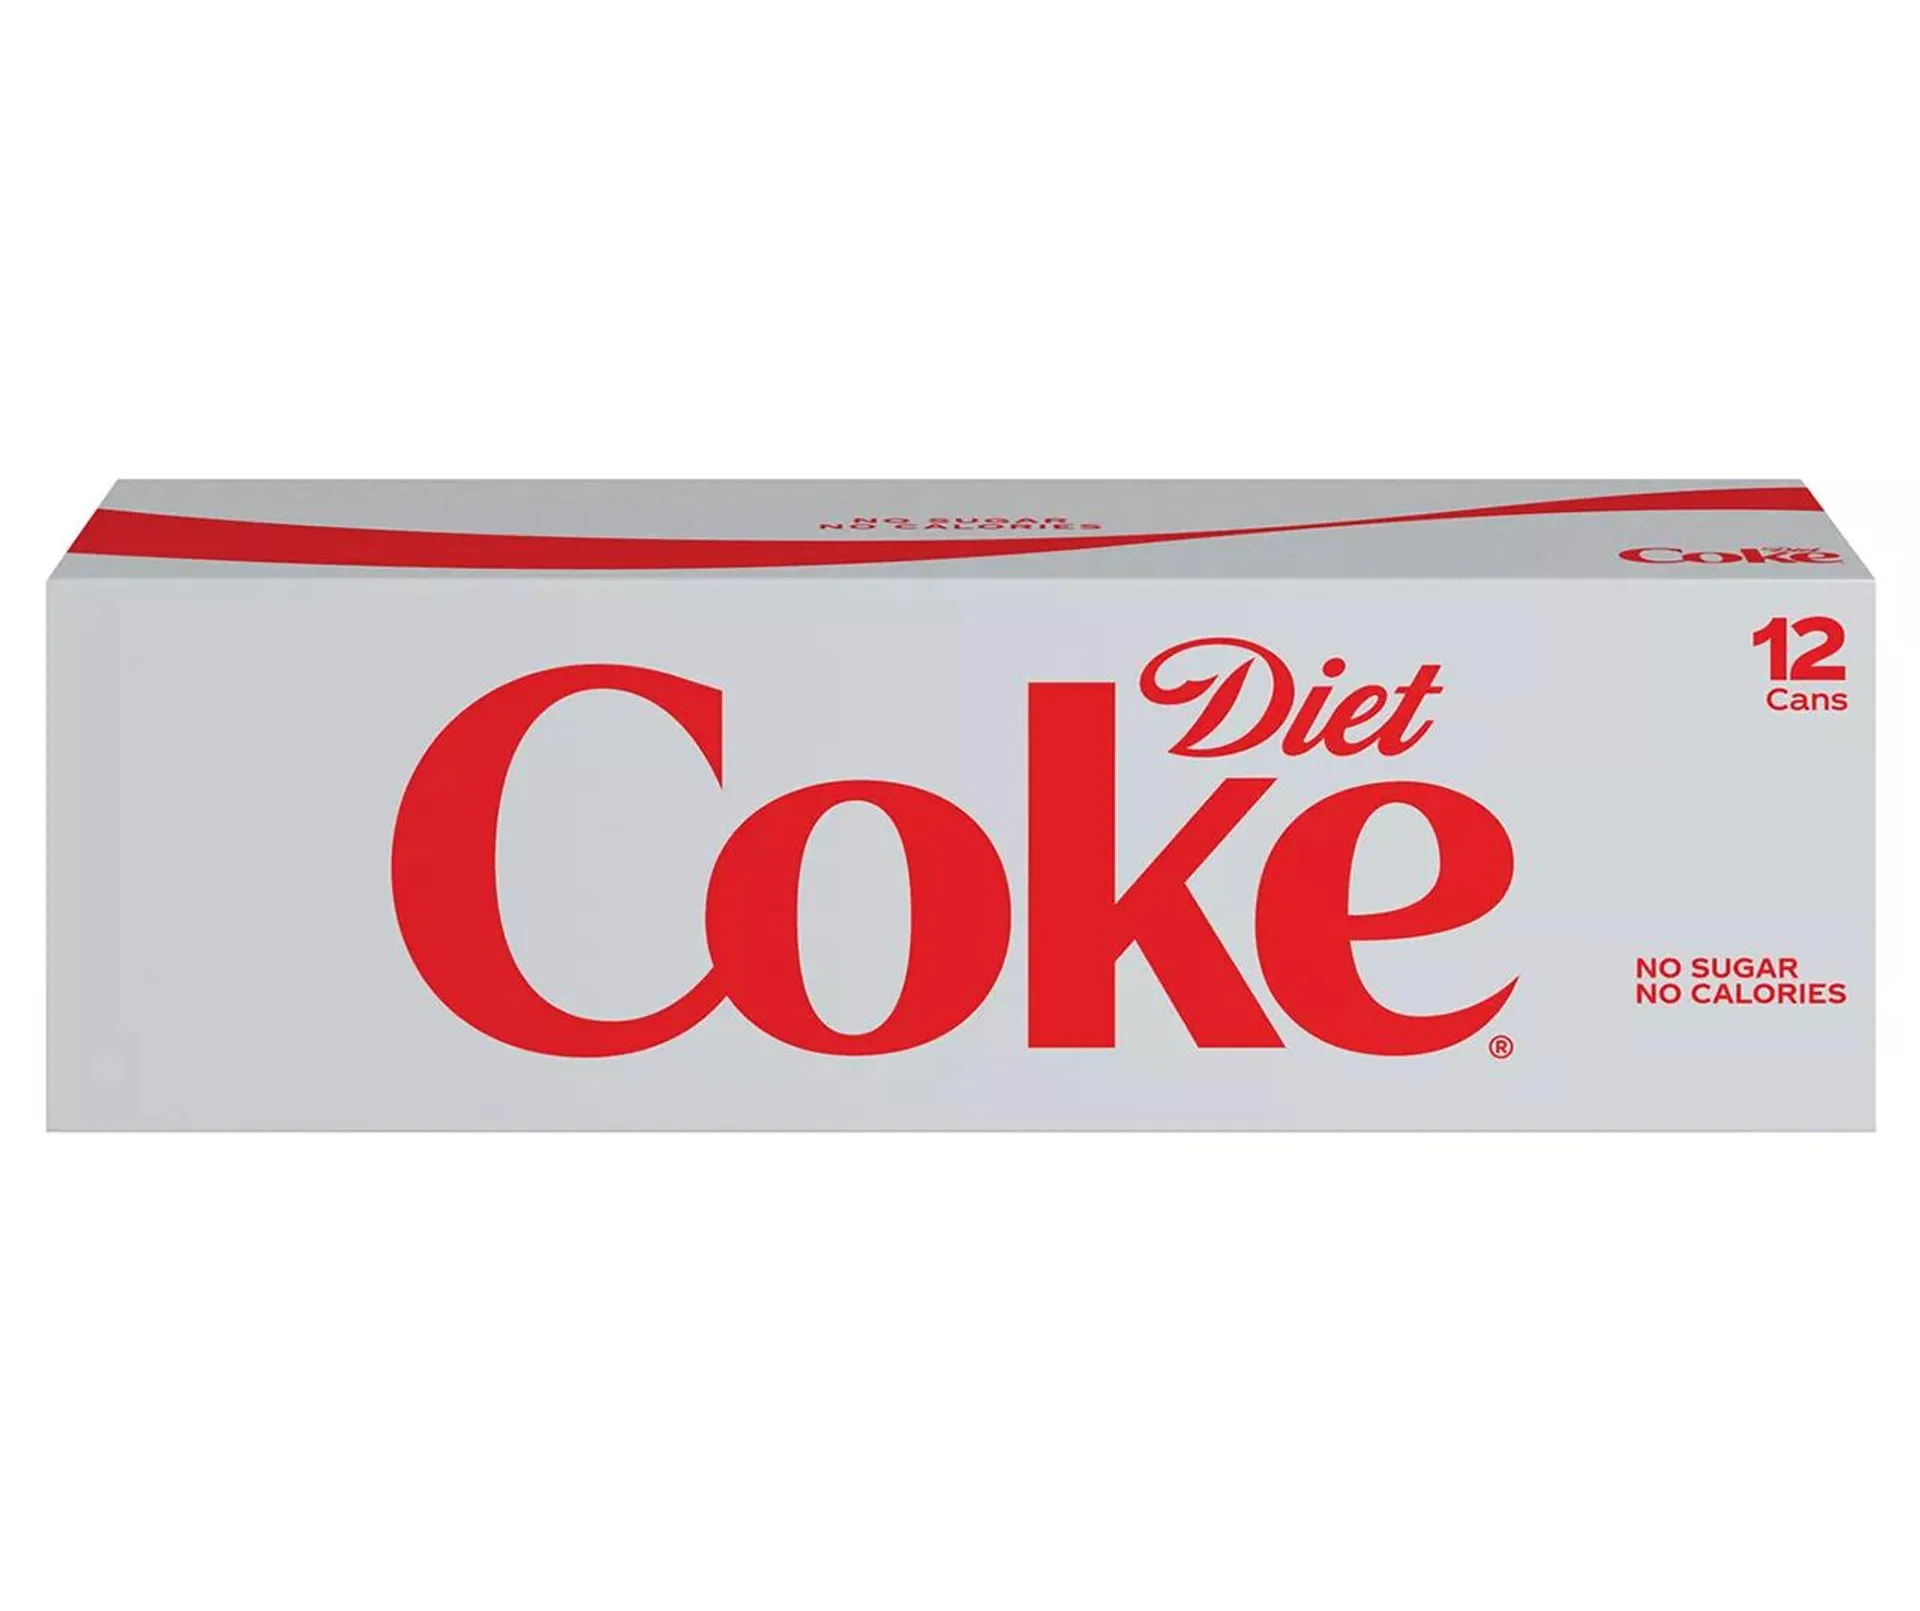 Diet Coke Soda Fridge Pack 12 - 12 fl oz Cans